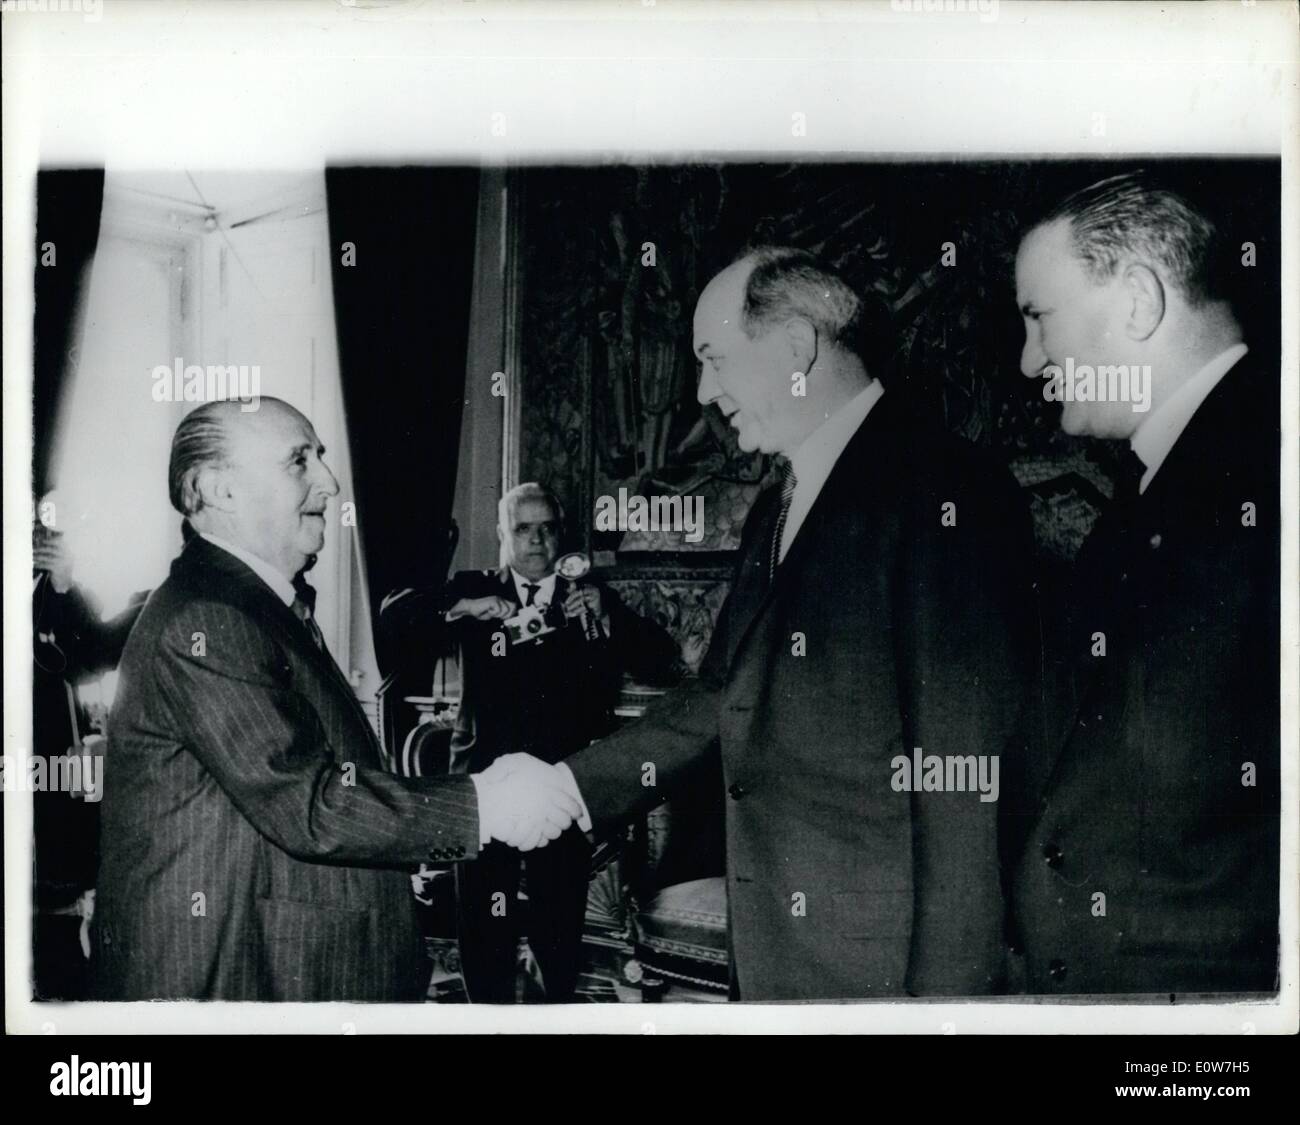 Le 12 décembre 1961 - Le secrétaire d'État américain appelle le général Franco : M. Dean Rusk le secrétaire d'État américain a effectué une visite officielle au Général Franco au palais du Pardo à Madrid -. La photo montre le général Franco (à gauche) salue M. Dean Rusk - au Palace, Madrid. Banque D'Images